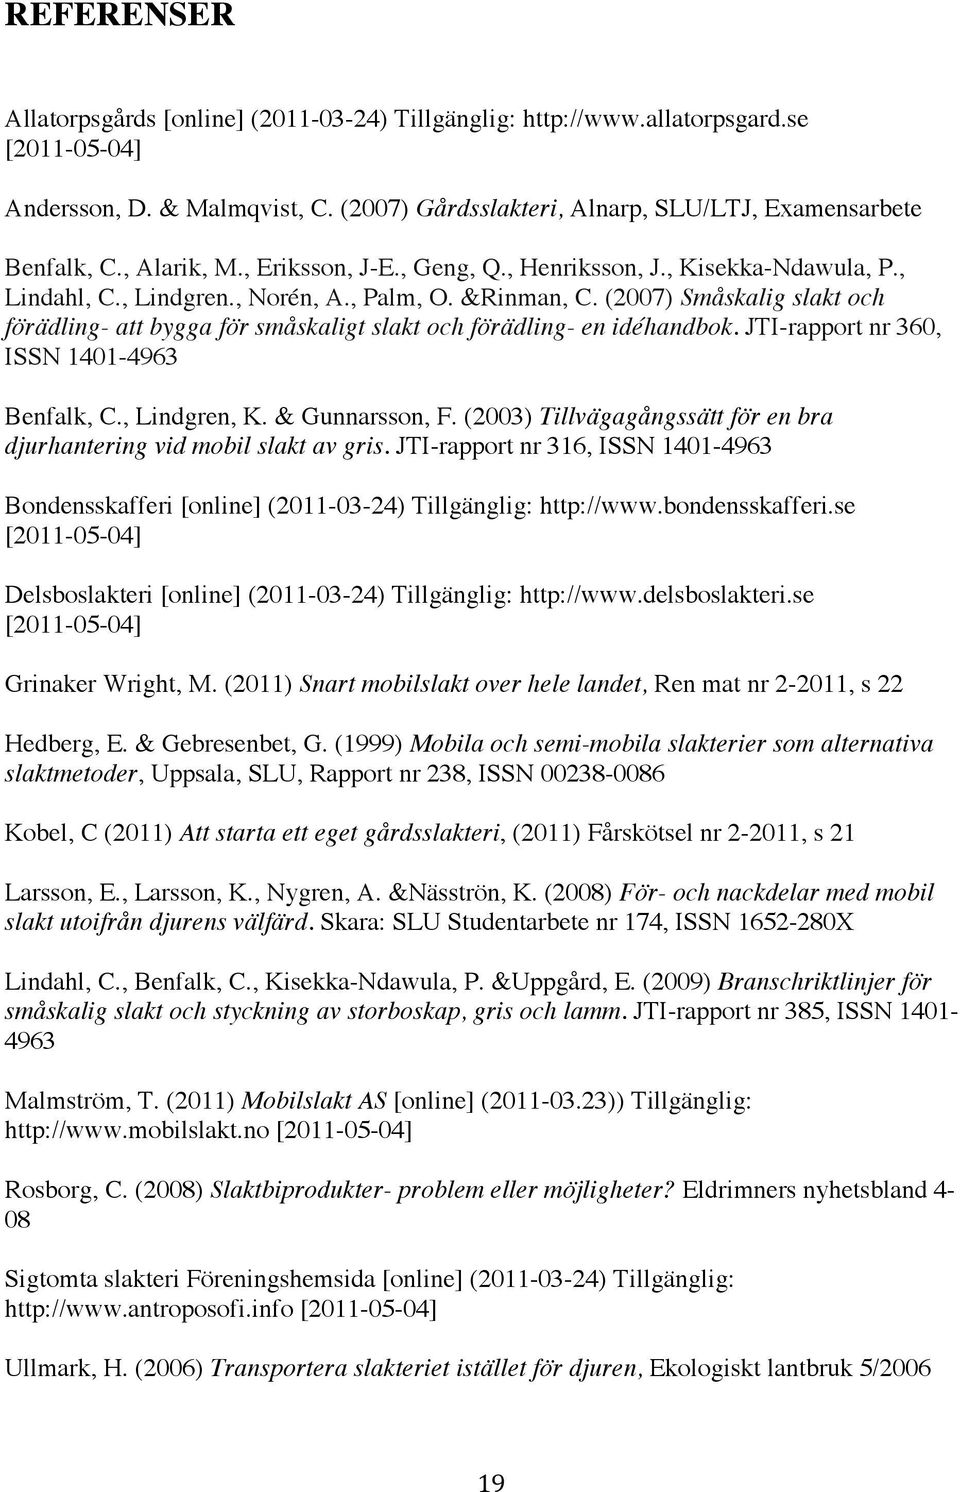 (2007) Småskalig slakt och förädling- att bygga för småskaligt slakt och förädling- en idéhandbok. JTI-rapport nr 360, ISSN 1401-4963 Benfalk, C., Lindgren, K. & Gunnarsson, F.